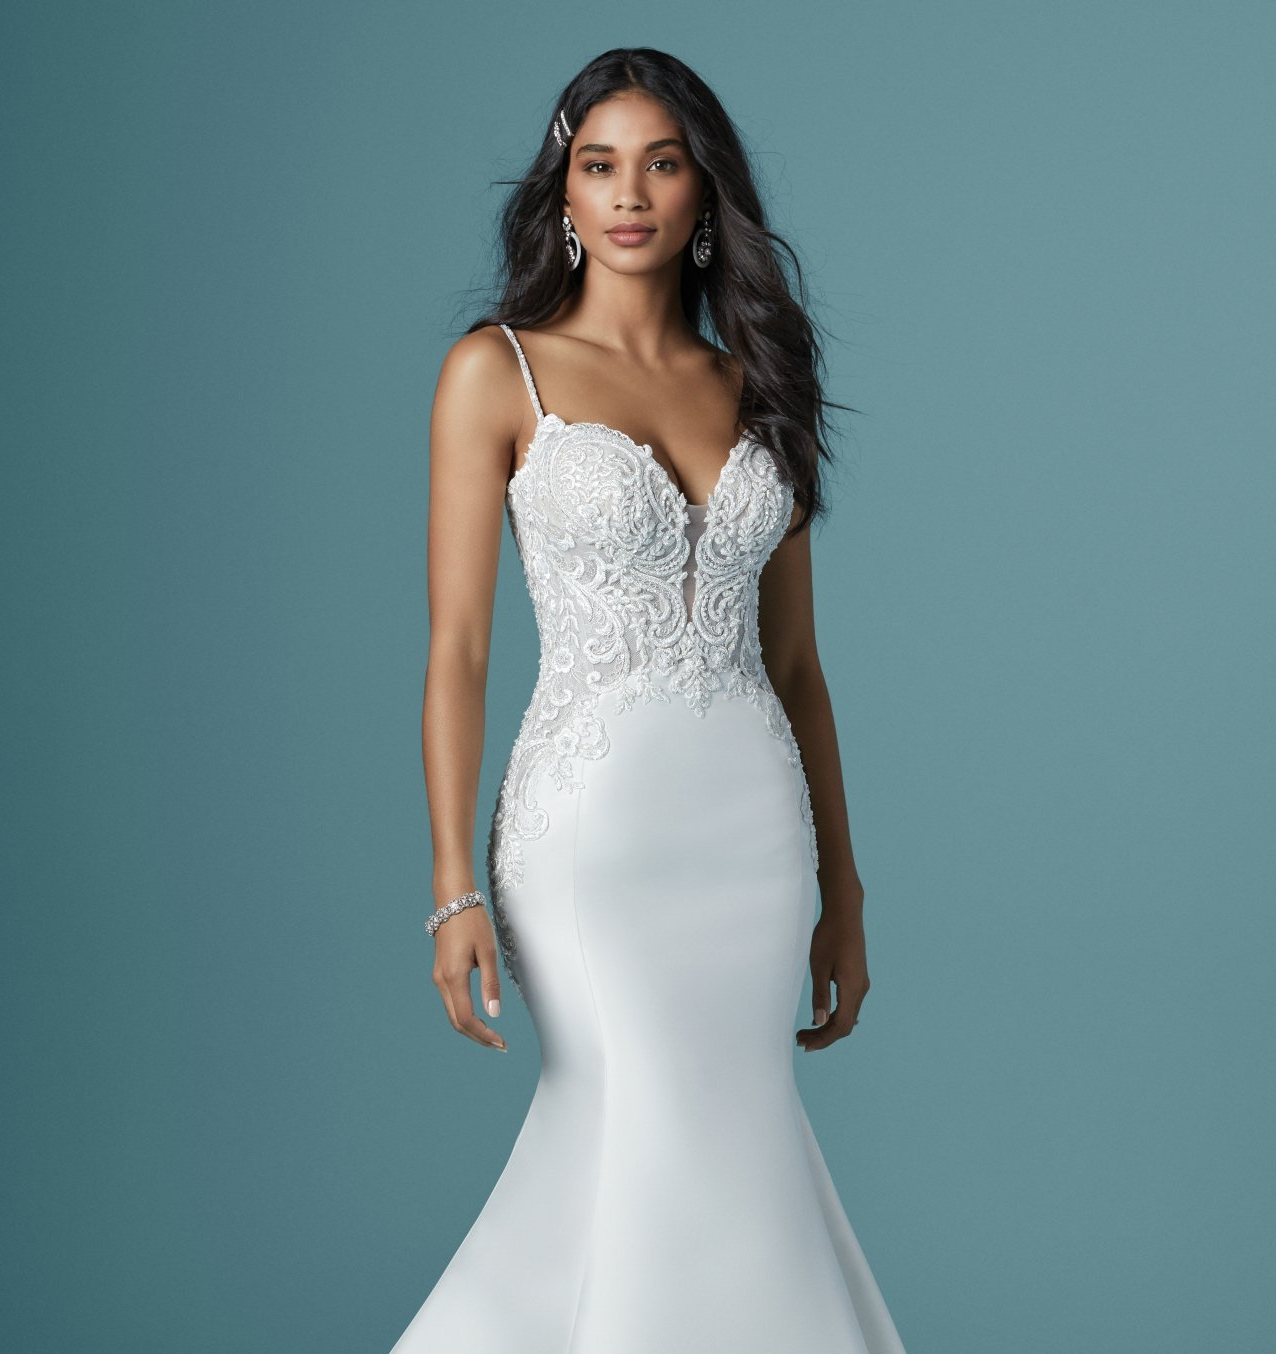 Tampa Florida Bridal Boutique/Shop, Bridal Gowns, Designer wedding dresses, custom wedding dresses, affordable wedding dresses,